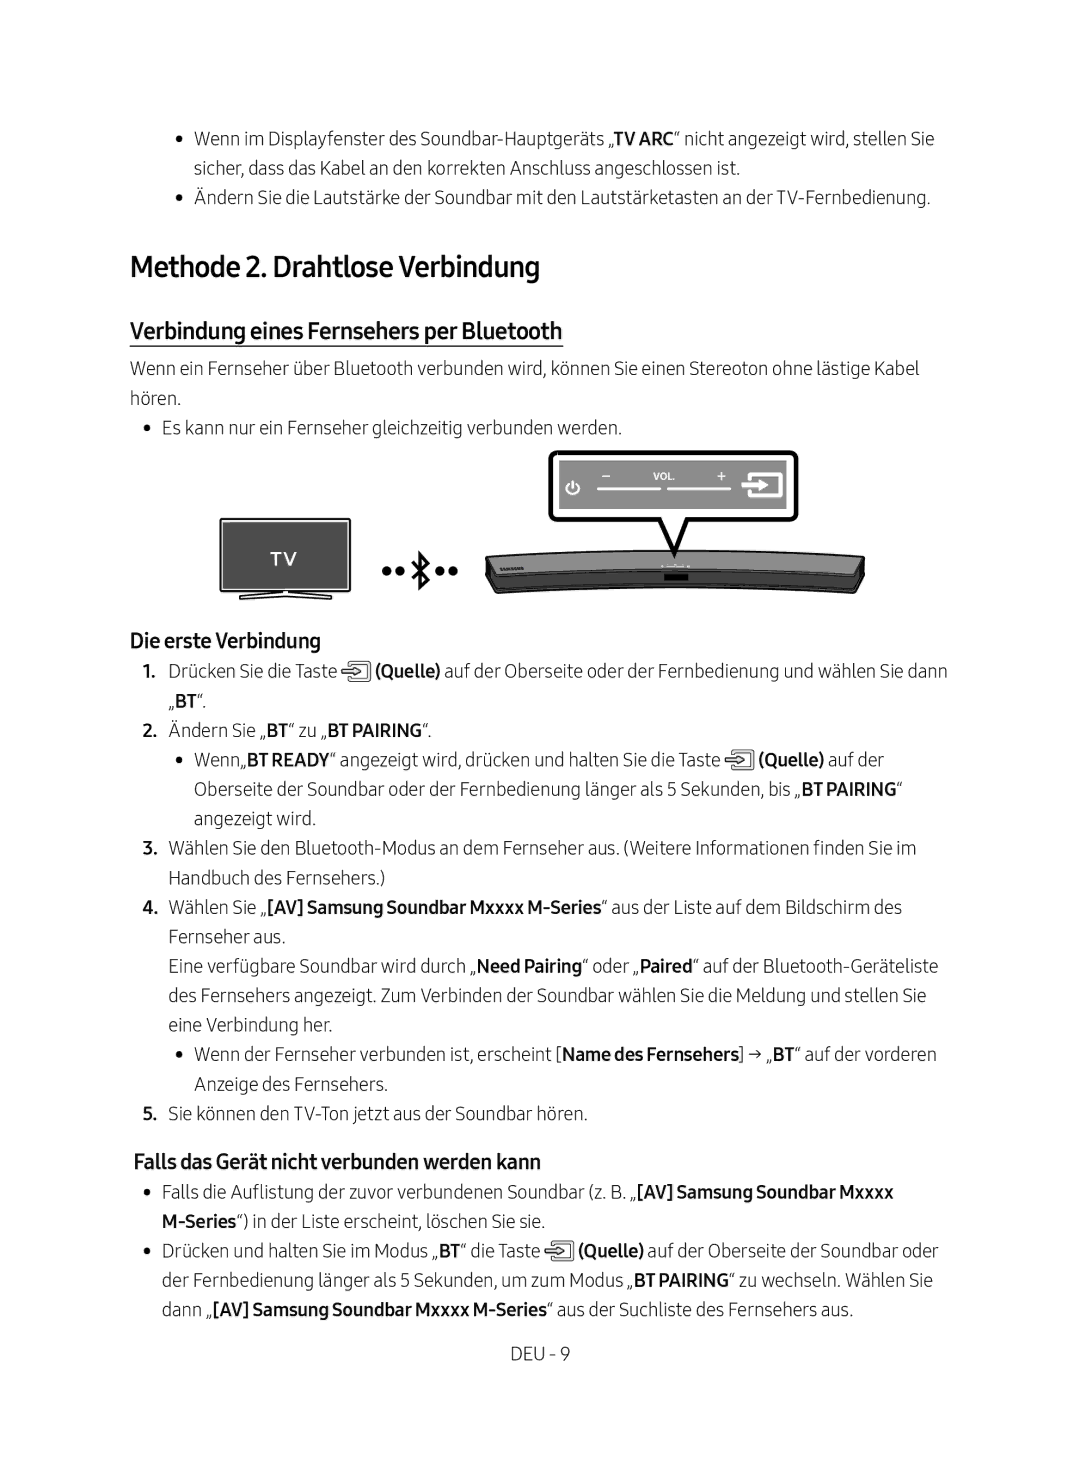 Samsung HW-M4500/EN manual Methode 2. Drahtlose Verbindung, Verbindung eines Fernsehers per Bluetooth, Die erste Verbindung 